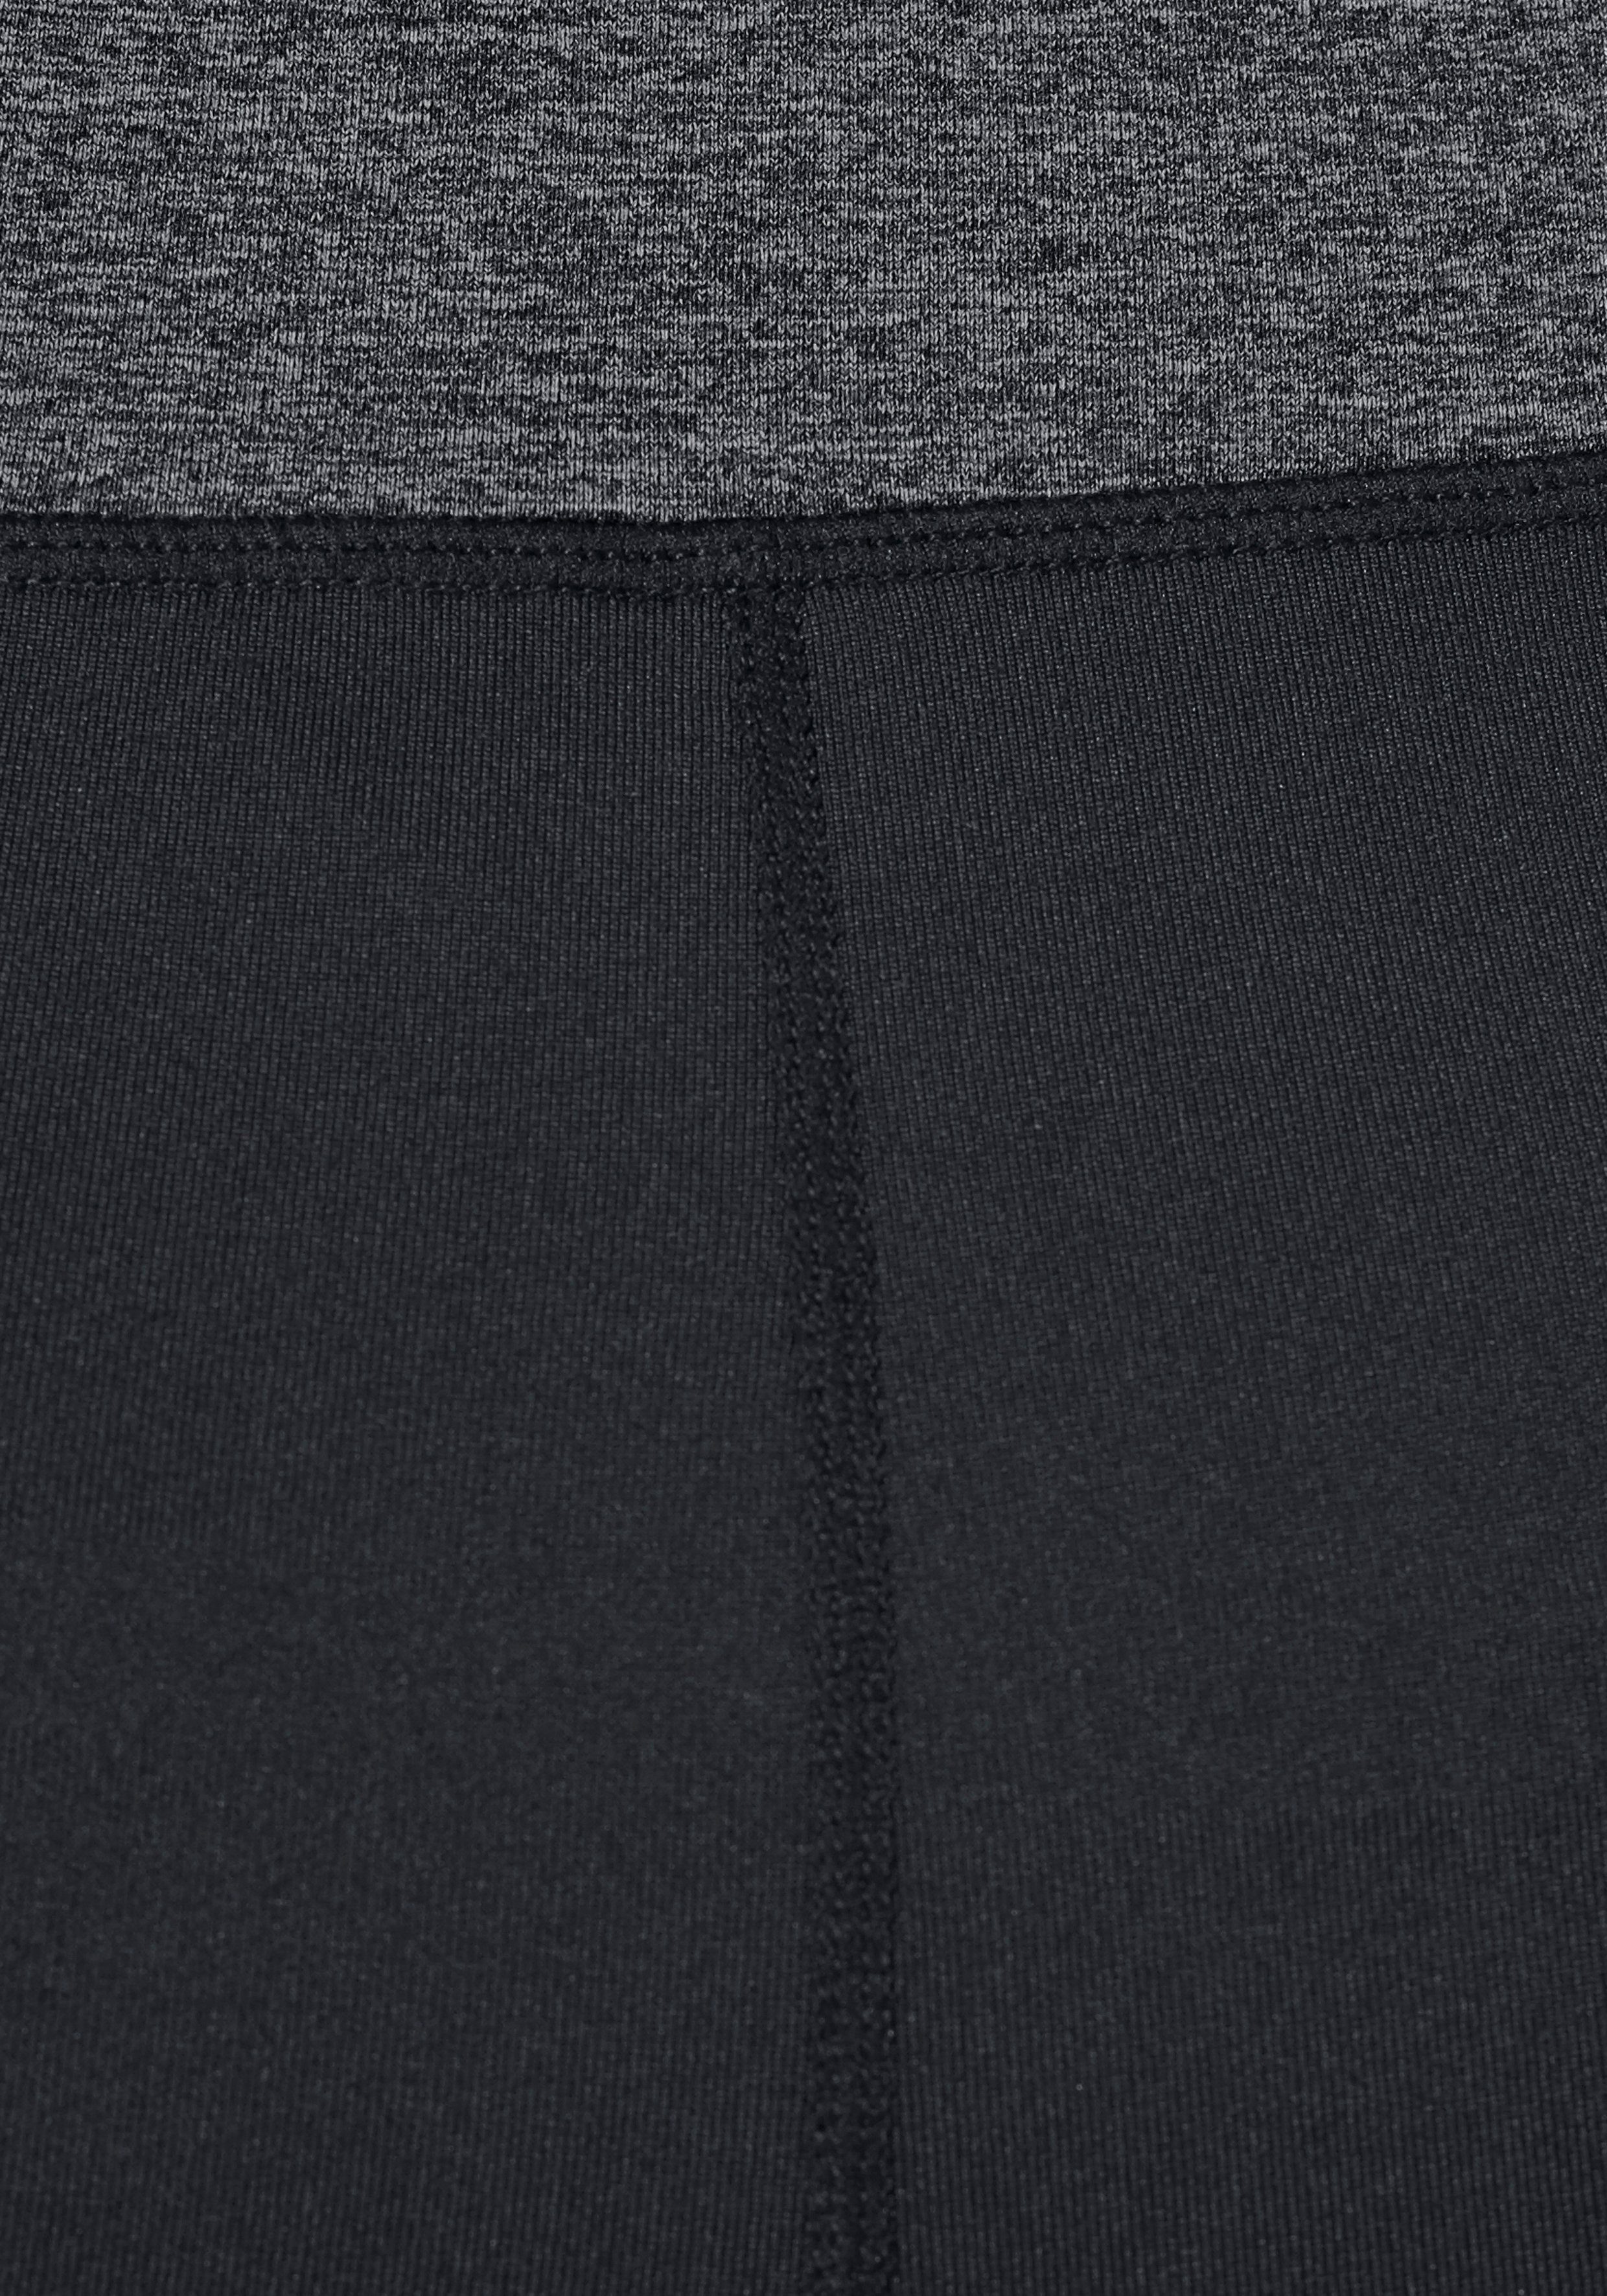 H.I.S Jazzpants aus recyceltem nachhaltigem Bund mit N-Gr Material Wickeloptik (Hose Material) schwarz aus